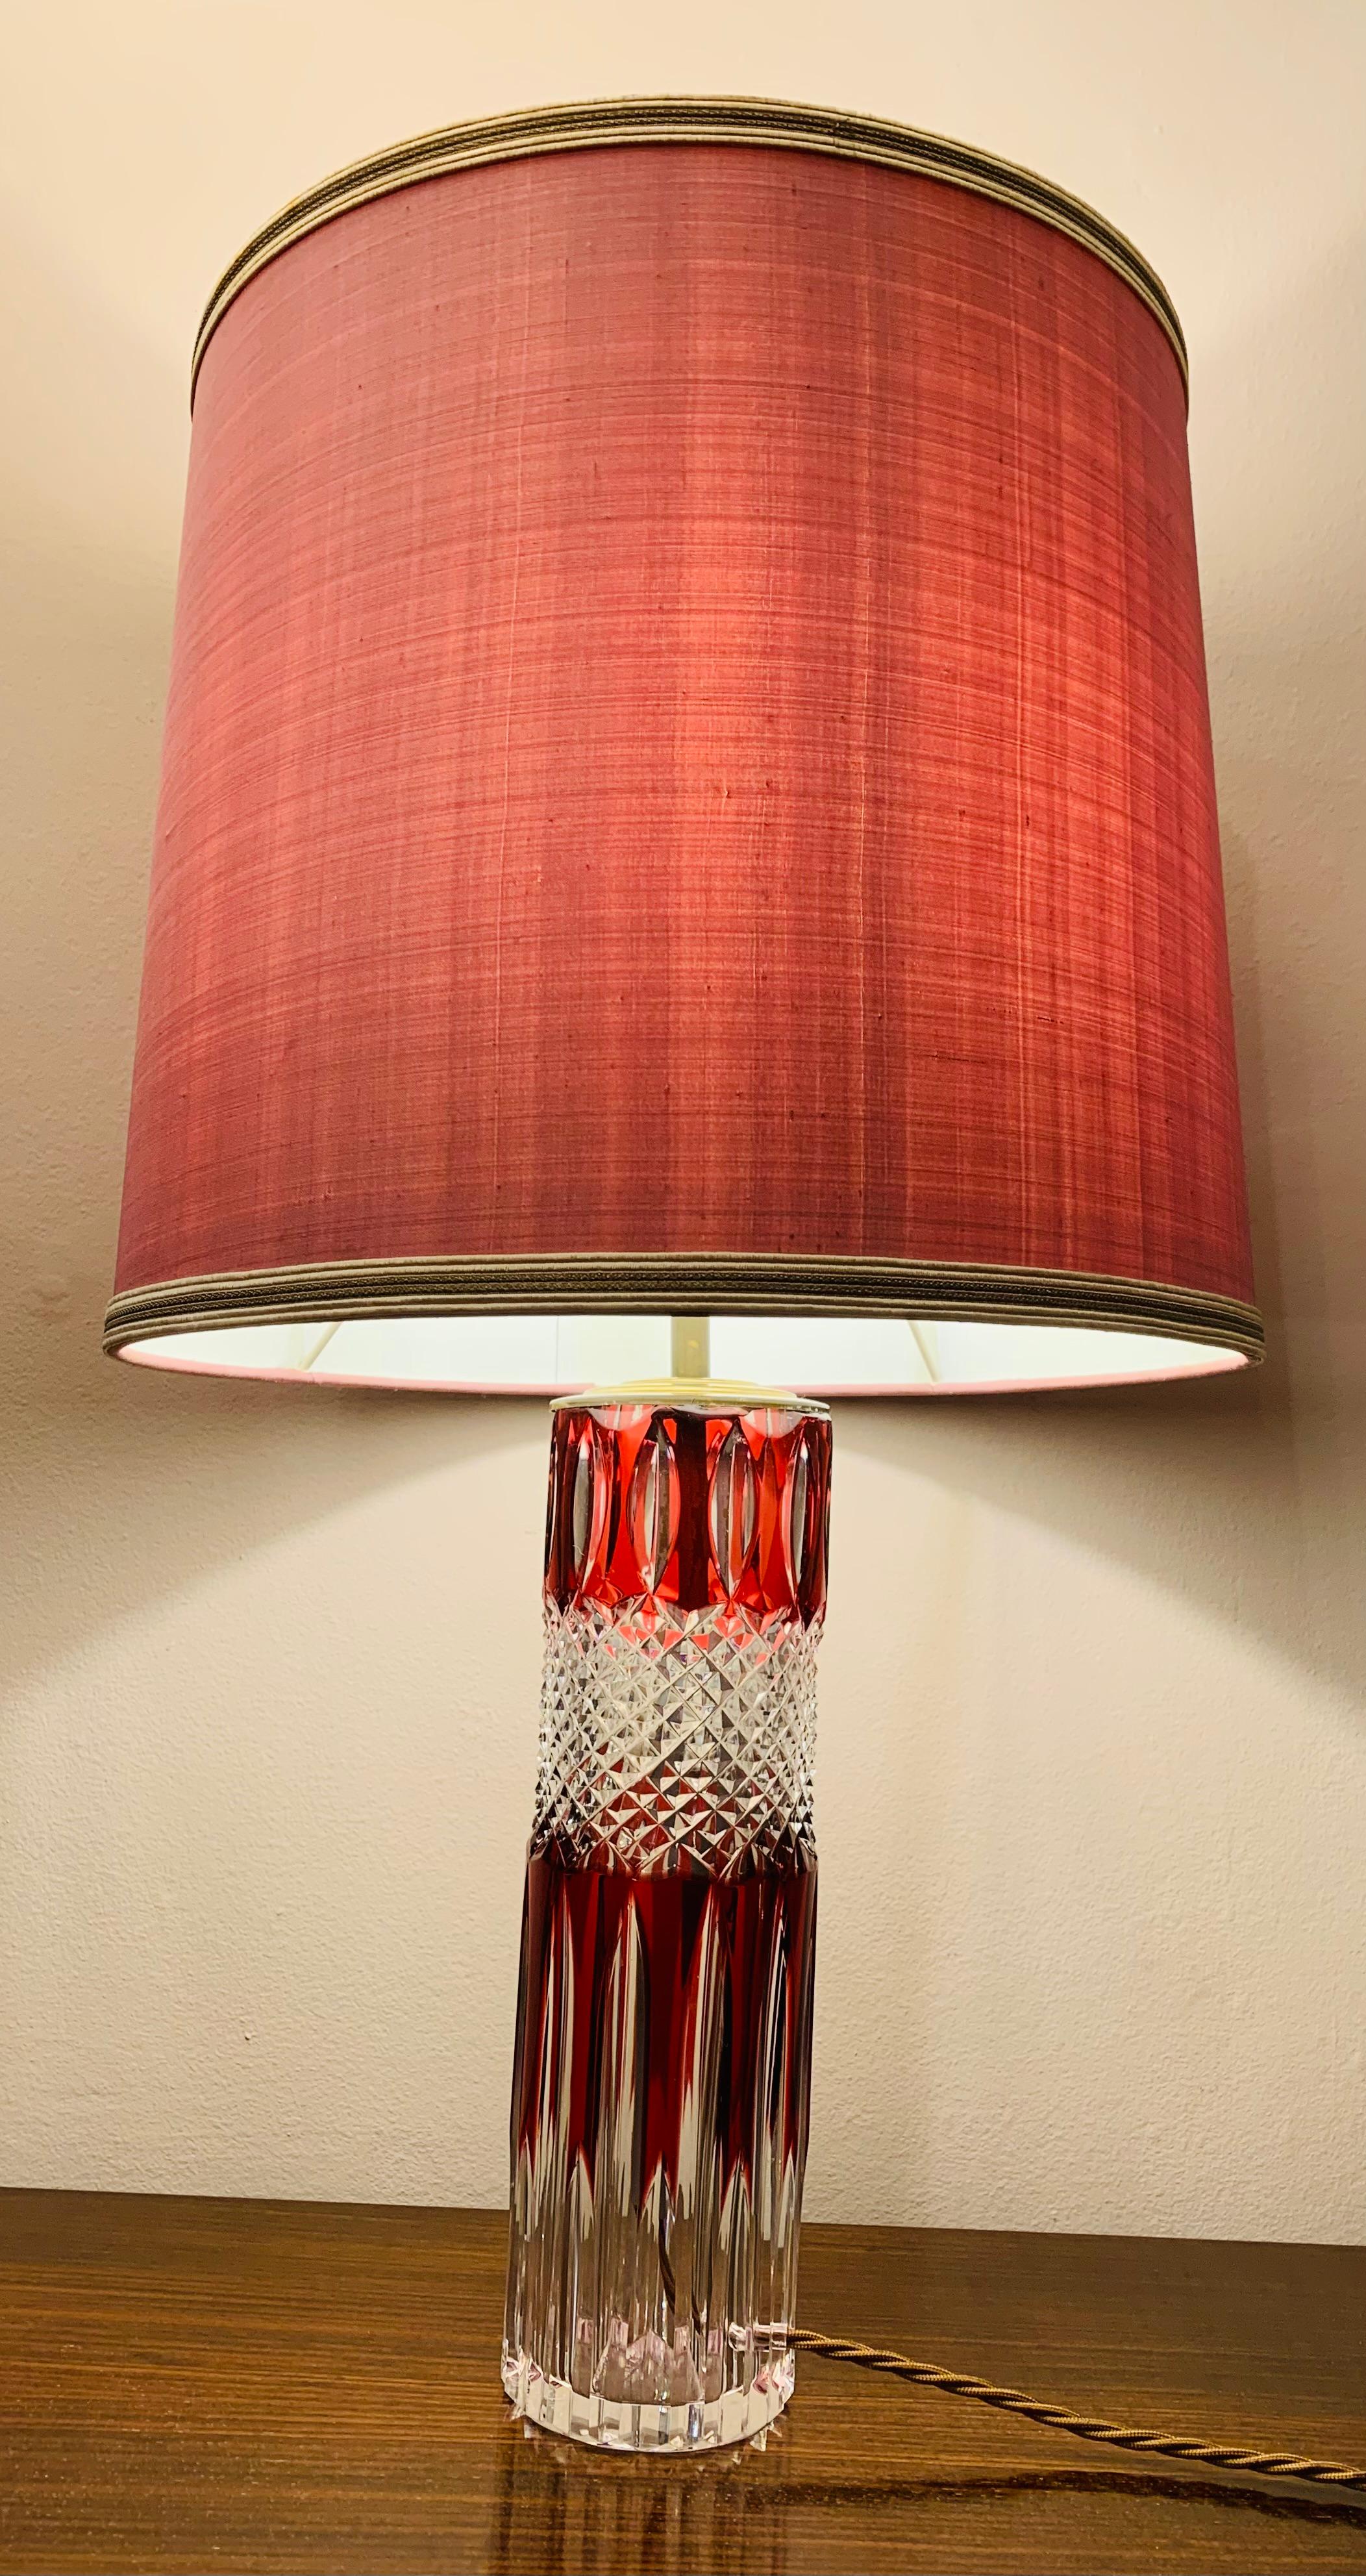 Un rare verre en cristal taillé Val Saint Lambert rouge rubis et clair avec un couvercle et une douille en laiton. Fabriqué en Belgique dans les années 1950. Recâblé avec un câble brun et en parfait état de marche avec un câble de soie brun. En très